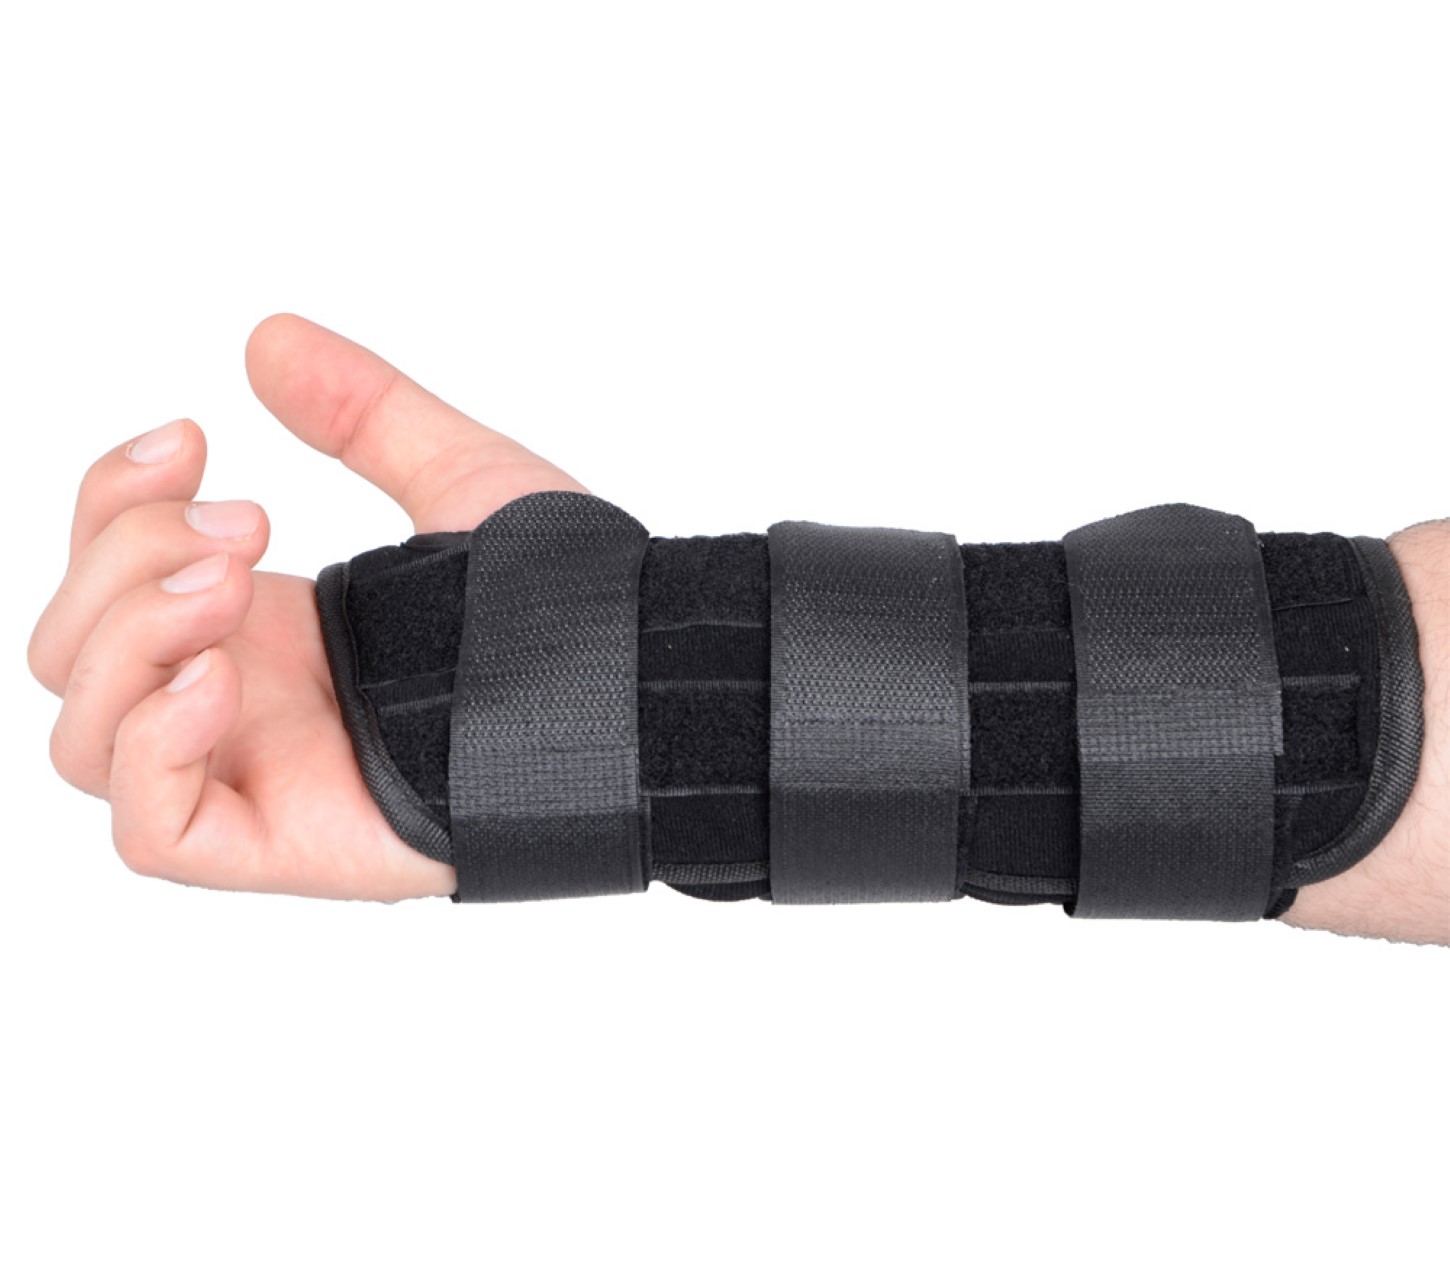 ayex Armstütze Arm Brace Handgelenkbandage - Manschette für z.B. Kamera - Schmerzlinderung Trageunterstützung mit Klettverschlüssen, rechte Hand